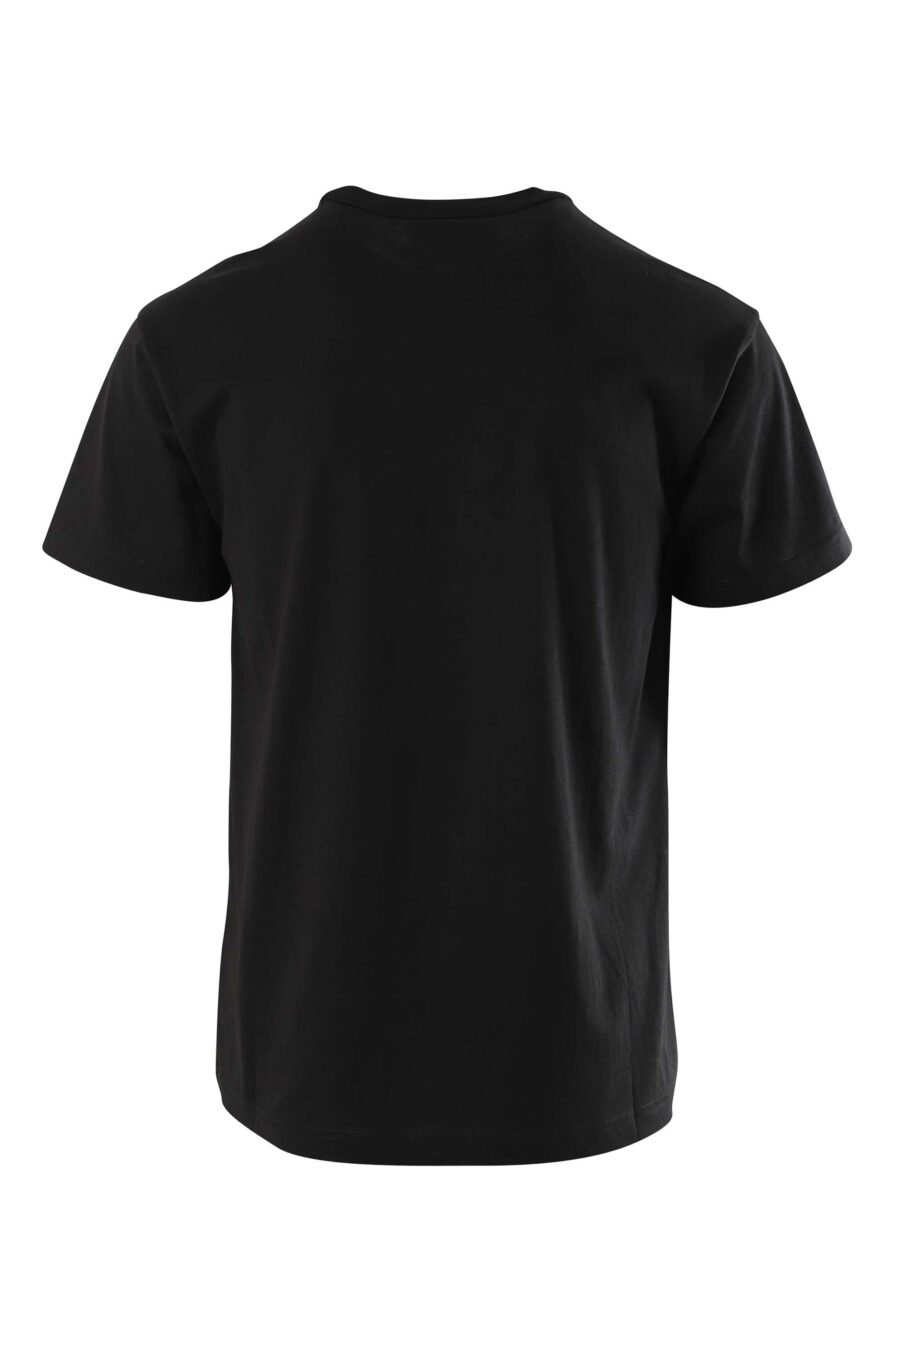 Camiseta negra con maxilogo en contraste - 8052019235449 2